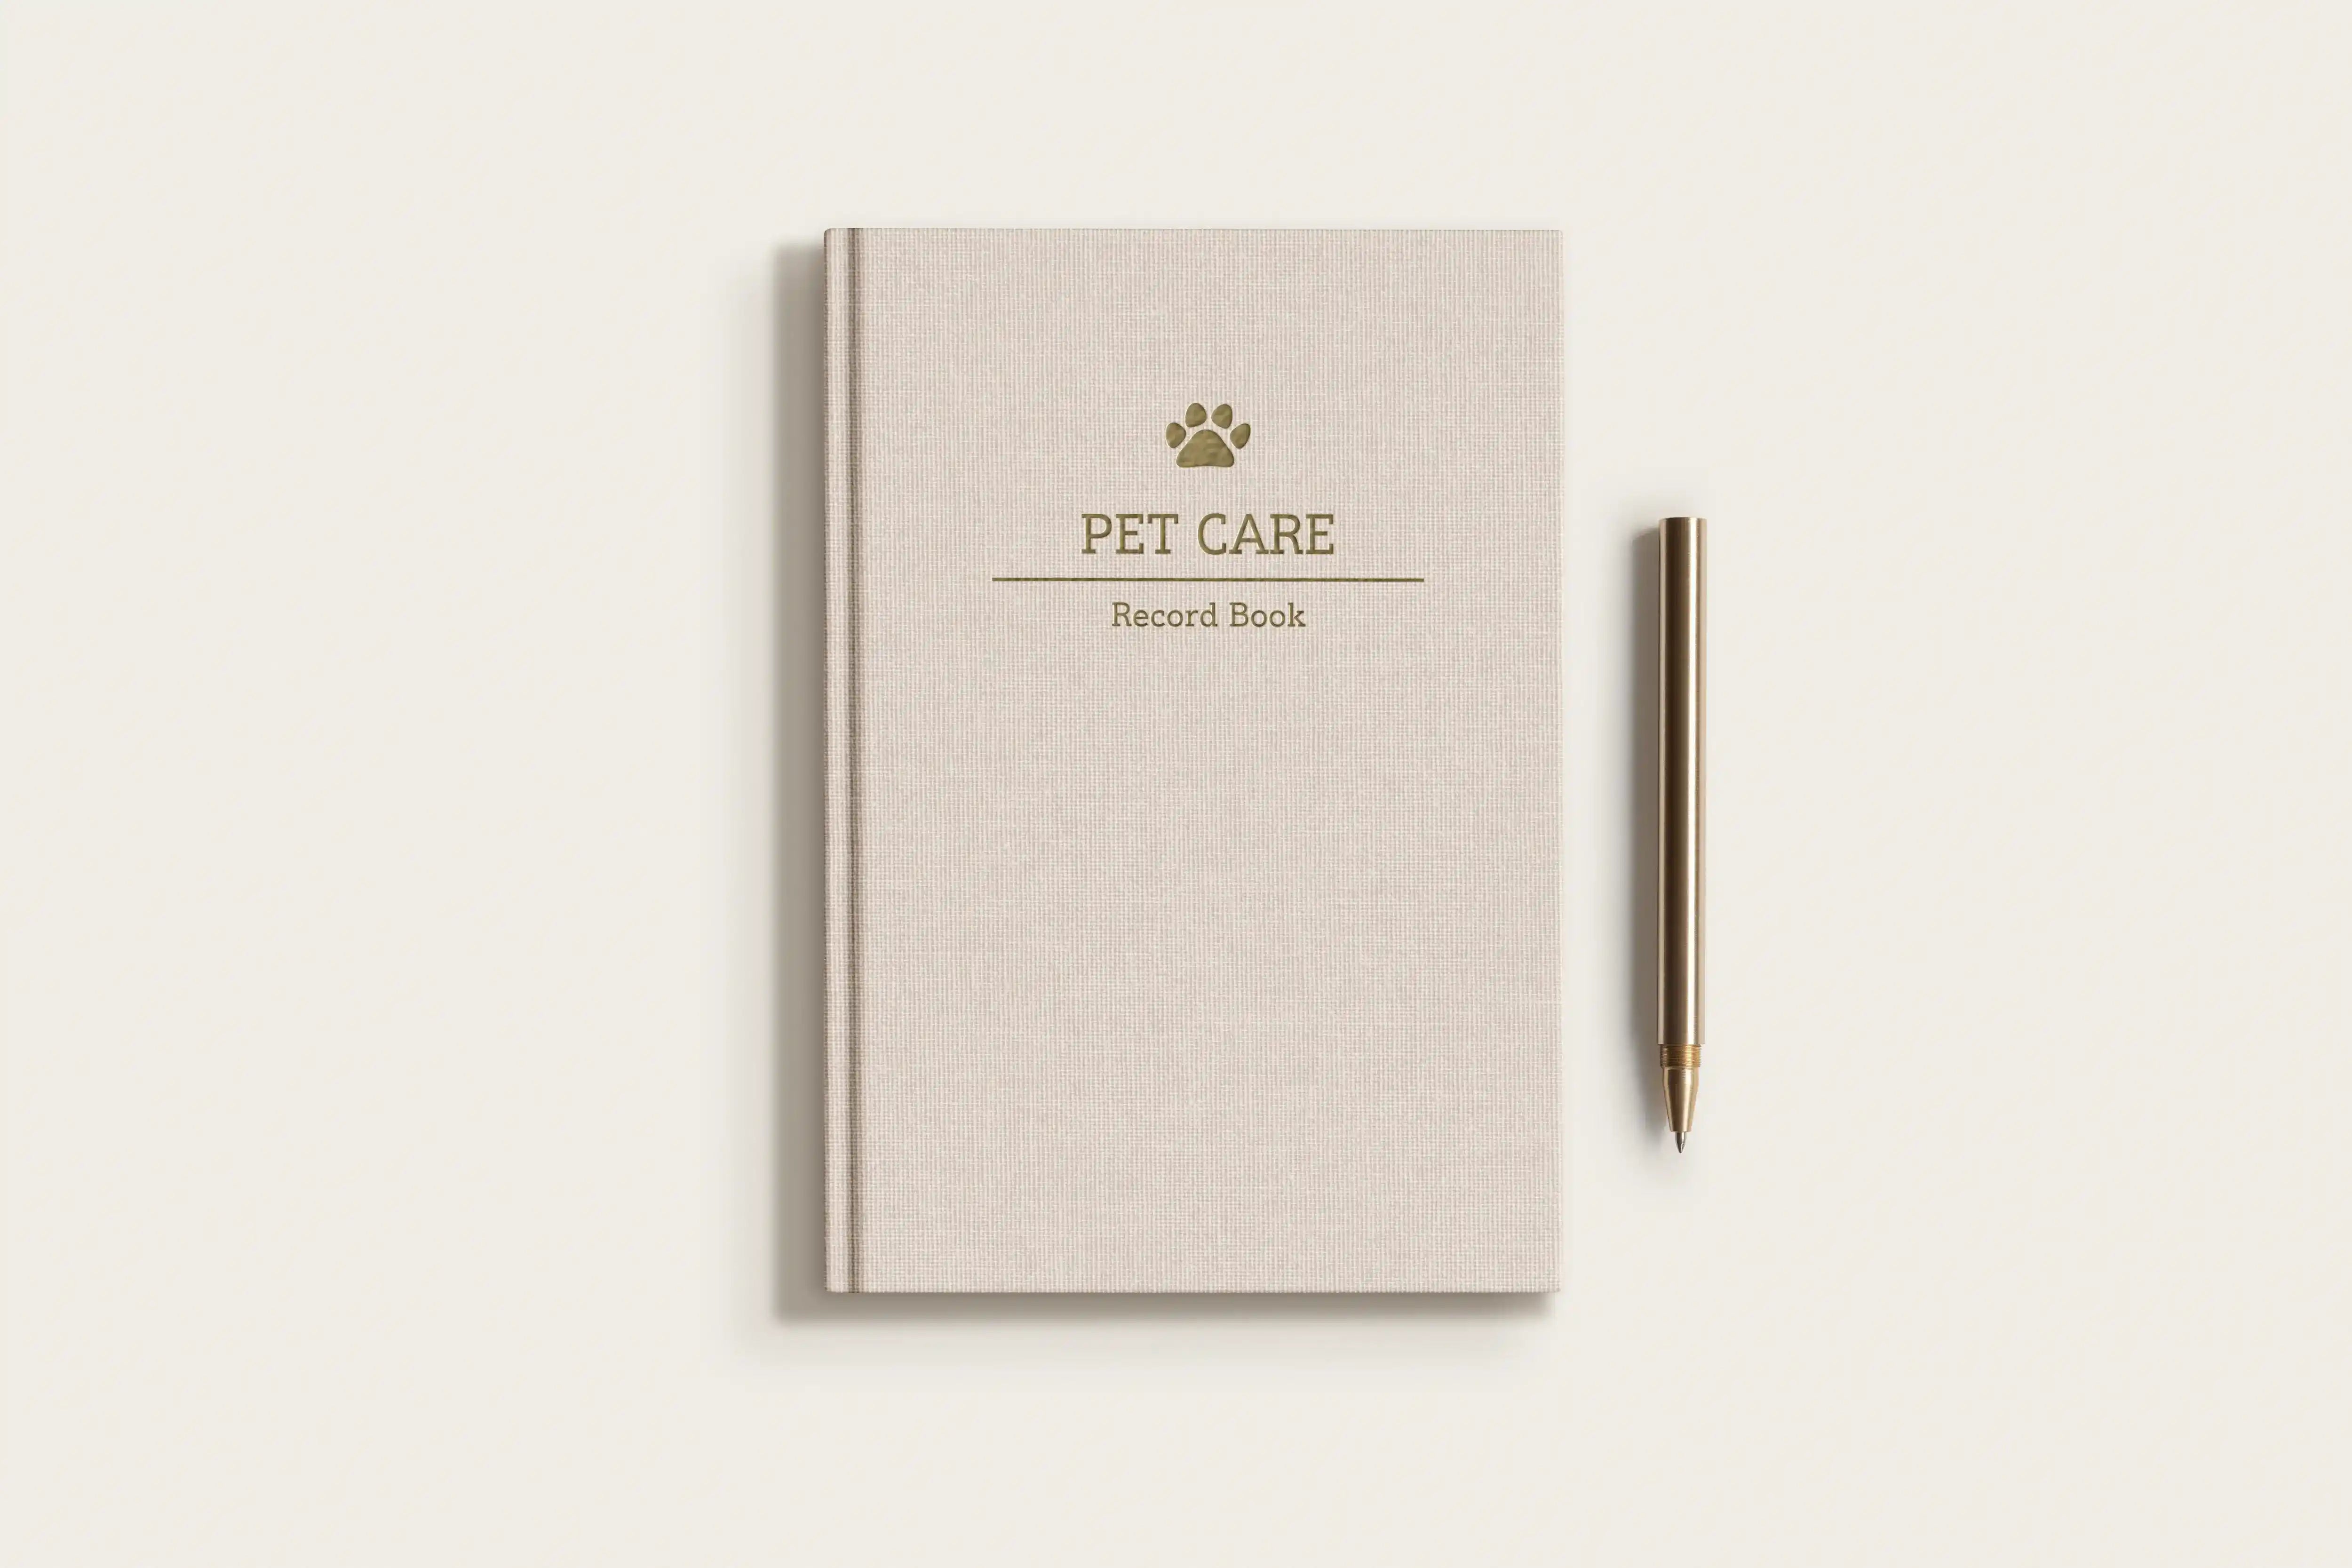 Pet Care Record Book